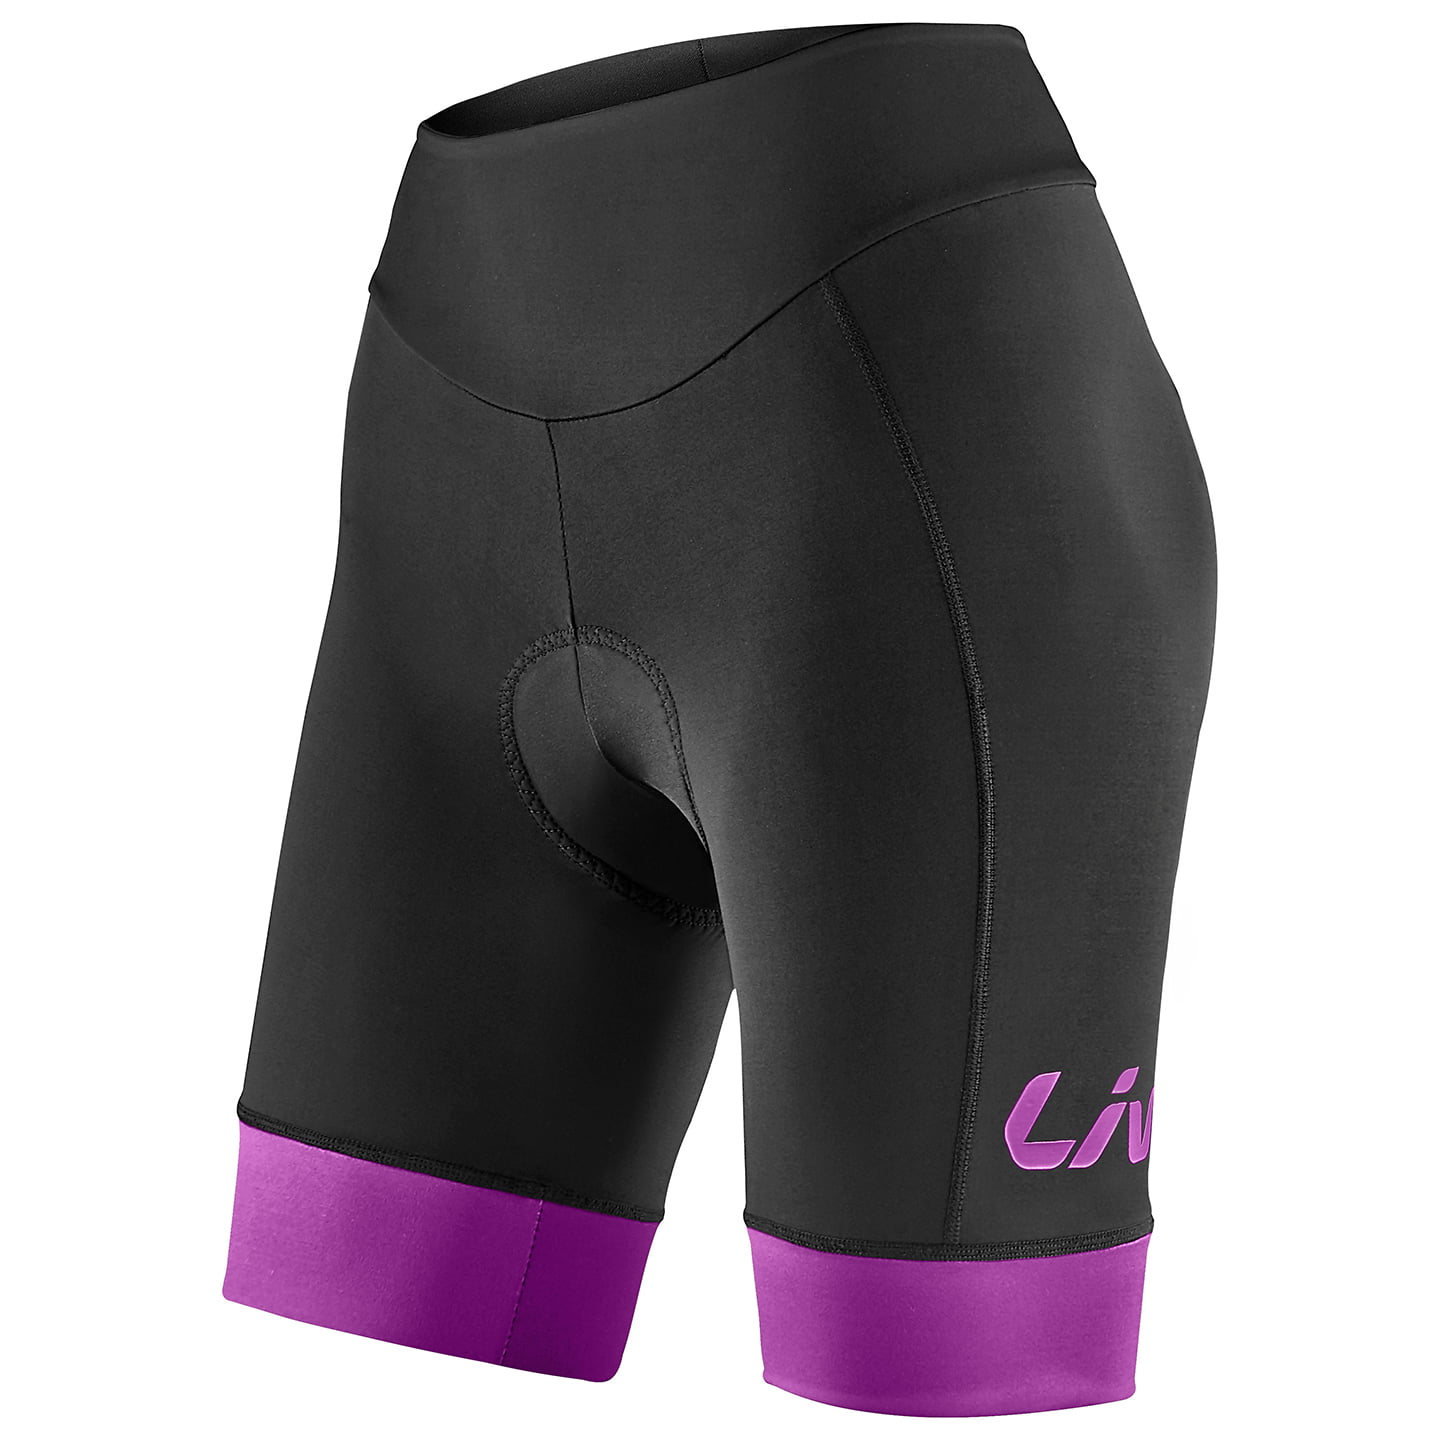 LIV Race Day Women’s Cycling Shorts Women’s Cycling Shorts, size XL, Cycle trousers, Cycle gear